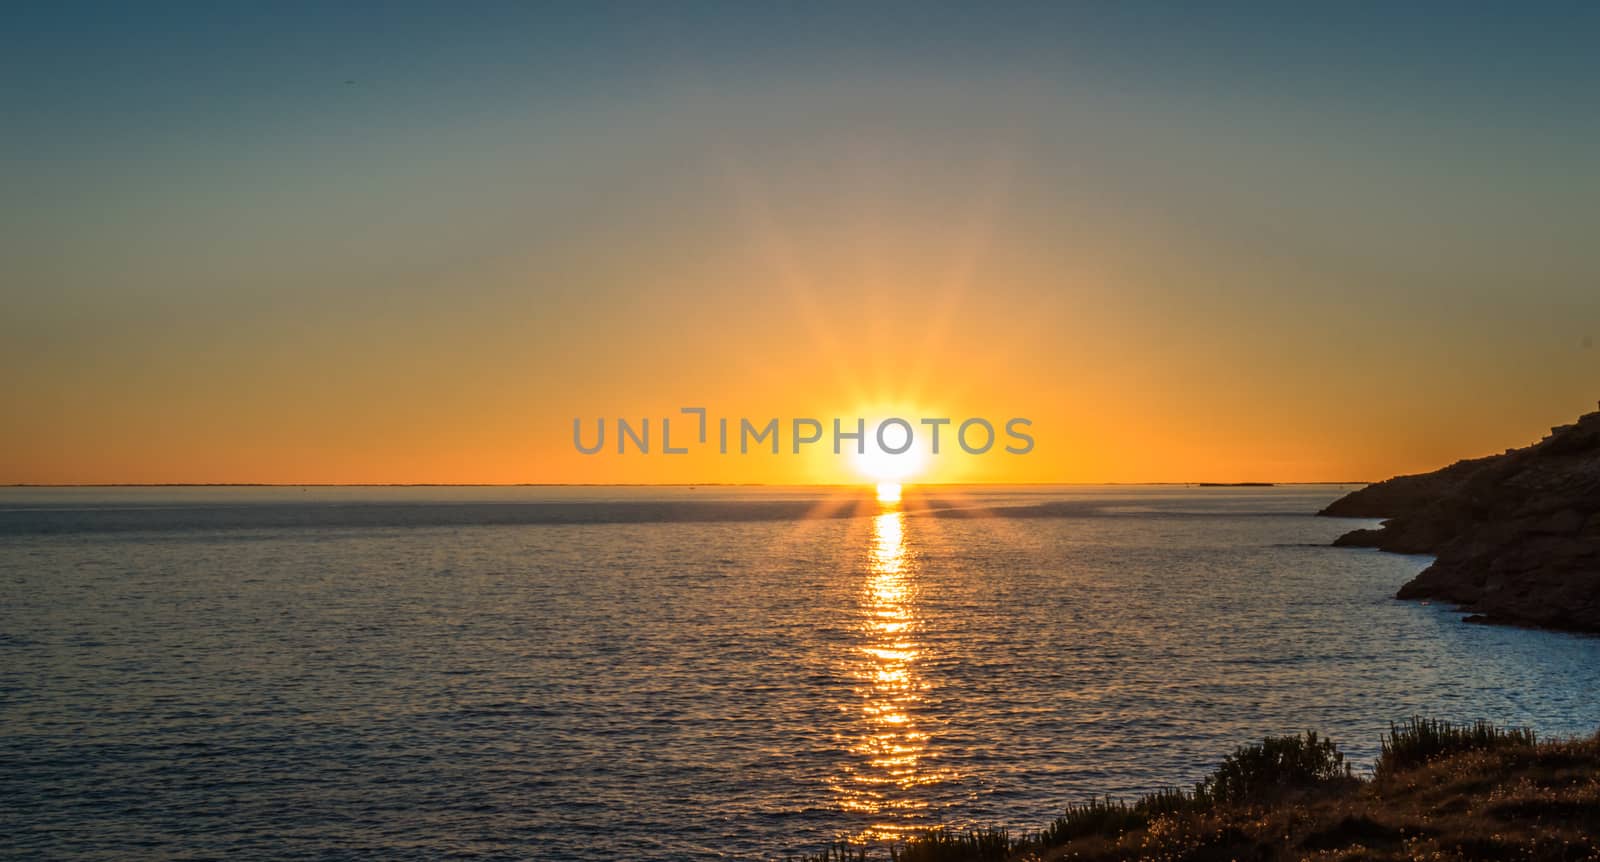 Sunset against the backdrop of the Atlantic Ocean by okskukuruza